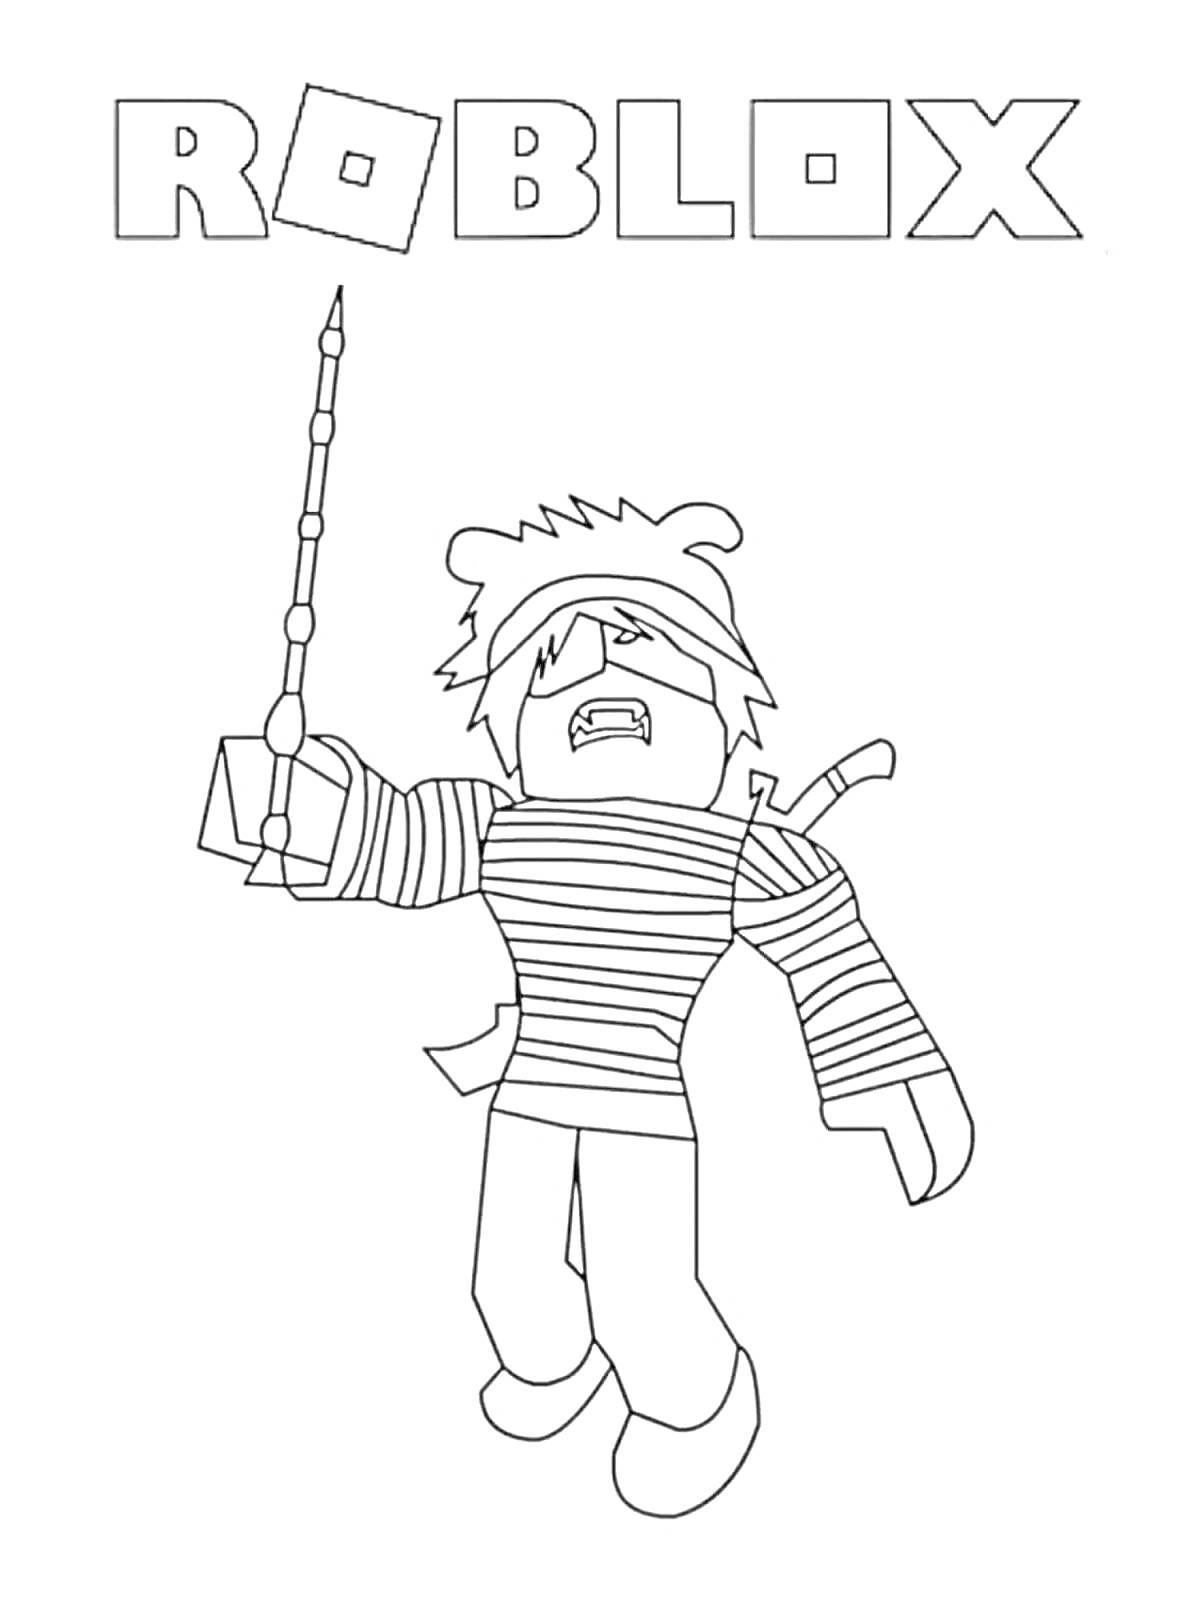 Раскраска Roblox - персонаж в полосатой одежде с палкой в руке и мечом за спиной под надписью 